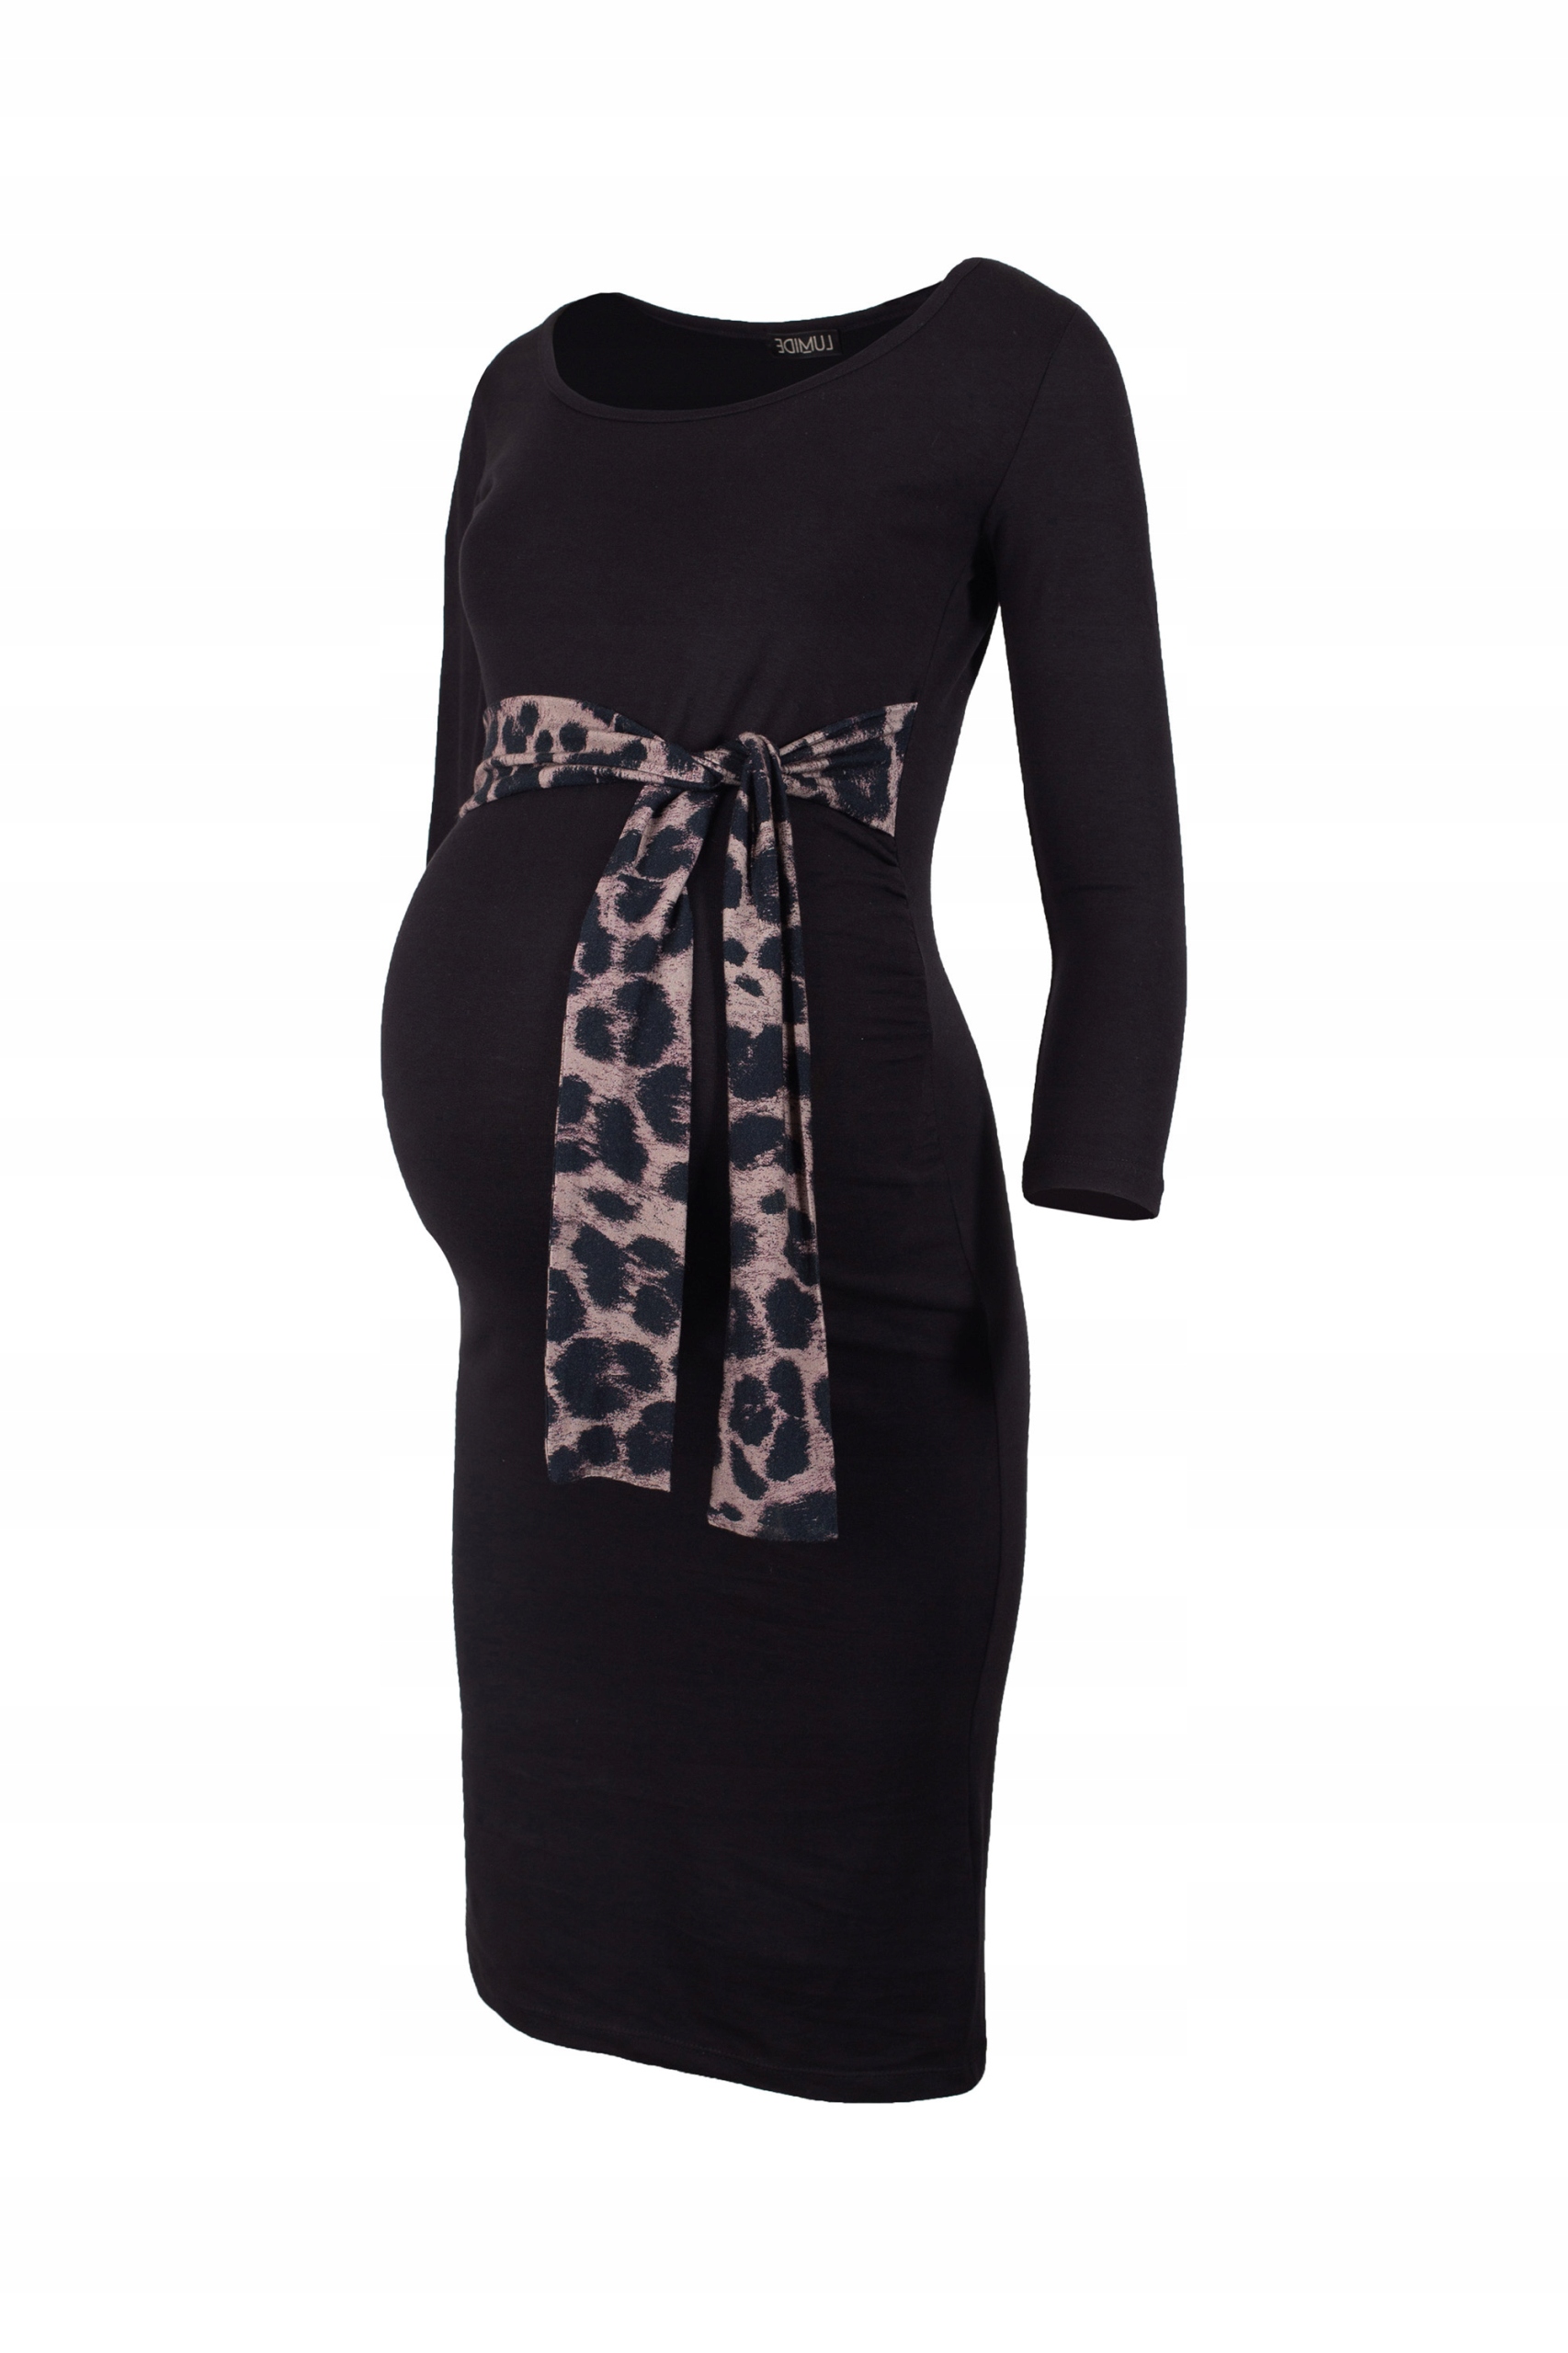 Платье для беременных с декоративным галстуком S / M Lm339 вес продукта с единичной упаковкой 0,3 кг